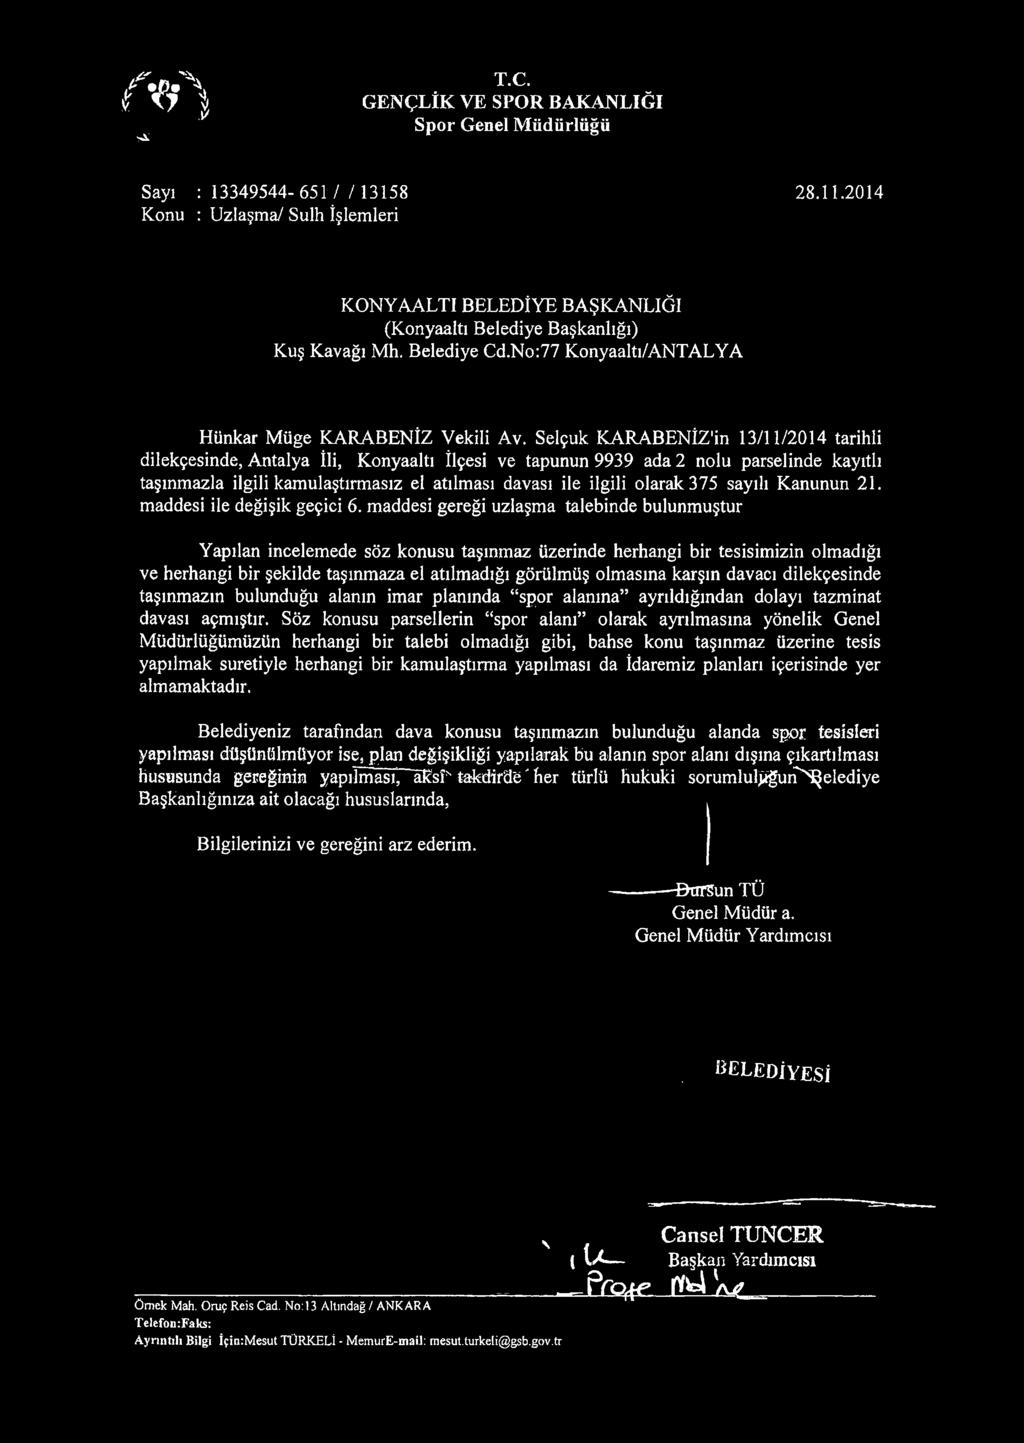 Selçuk KARABENİZ'in 13/11/2014 tarihli dilekçesinde, Antalya İli, Konyaaltı İlçesi ve tapunun 9939 ada 2 nolu parselinde kayıtlı taşınmazla ilgili kamulaştırmasız el atılması davası ile ilgili olarak